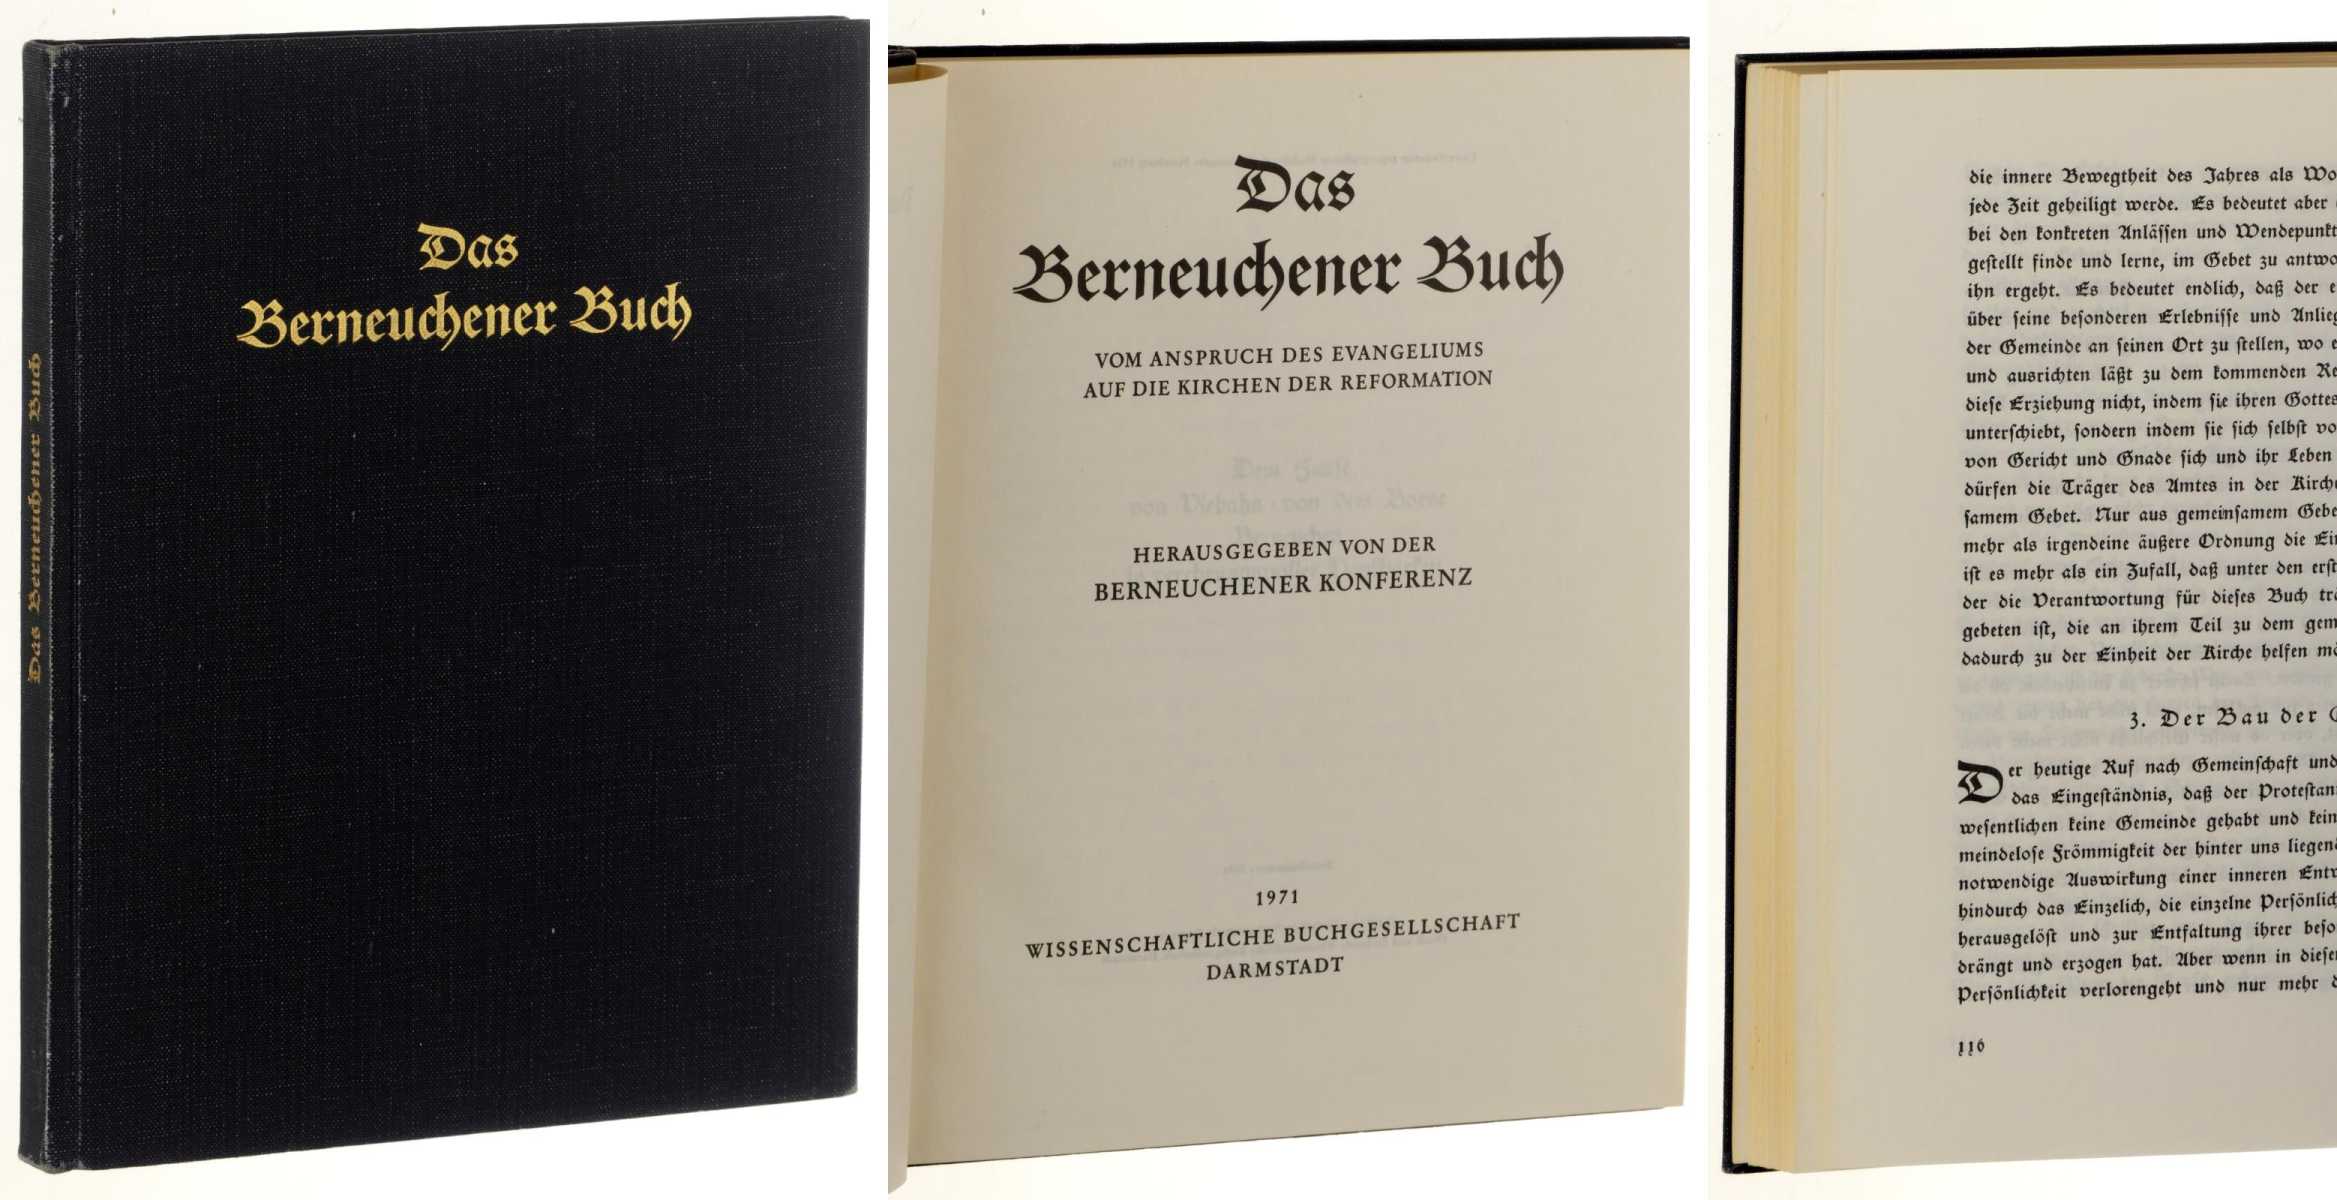   Das Berneuchener Buch. Von dem Anspruch des Evangeliums auf die Kirchen der Reformation. Hrsg. von der Berneuchener Konferenz. 